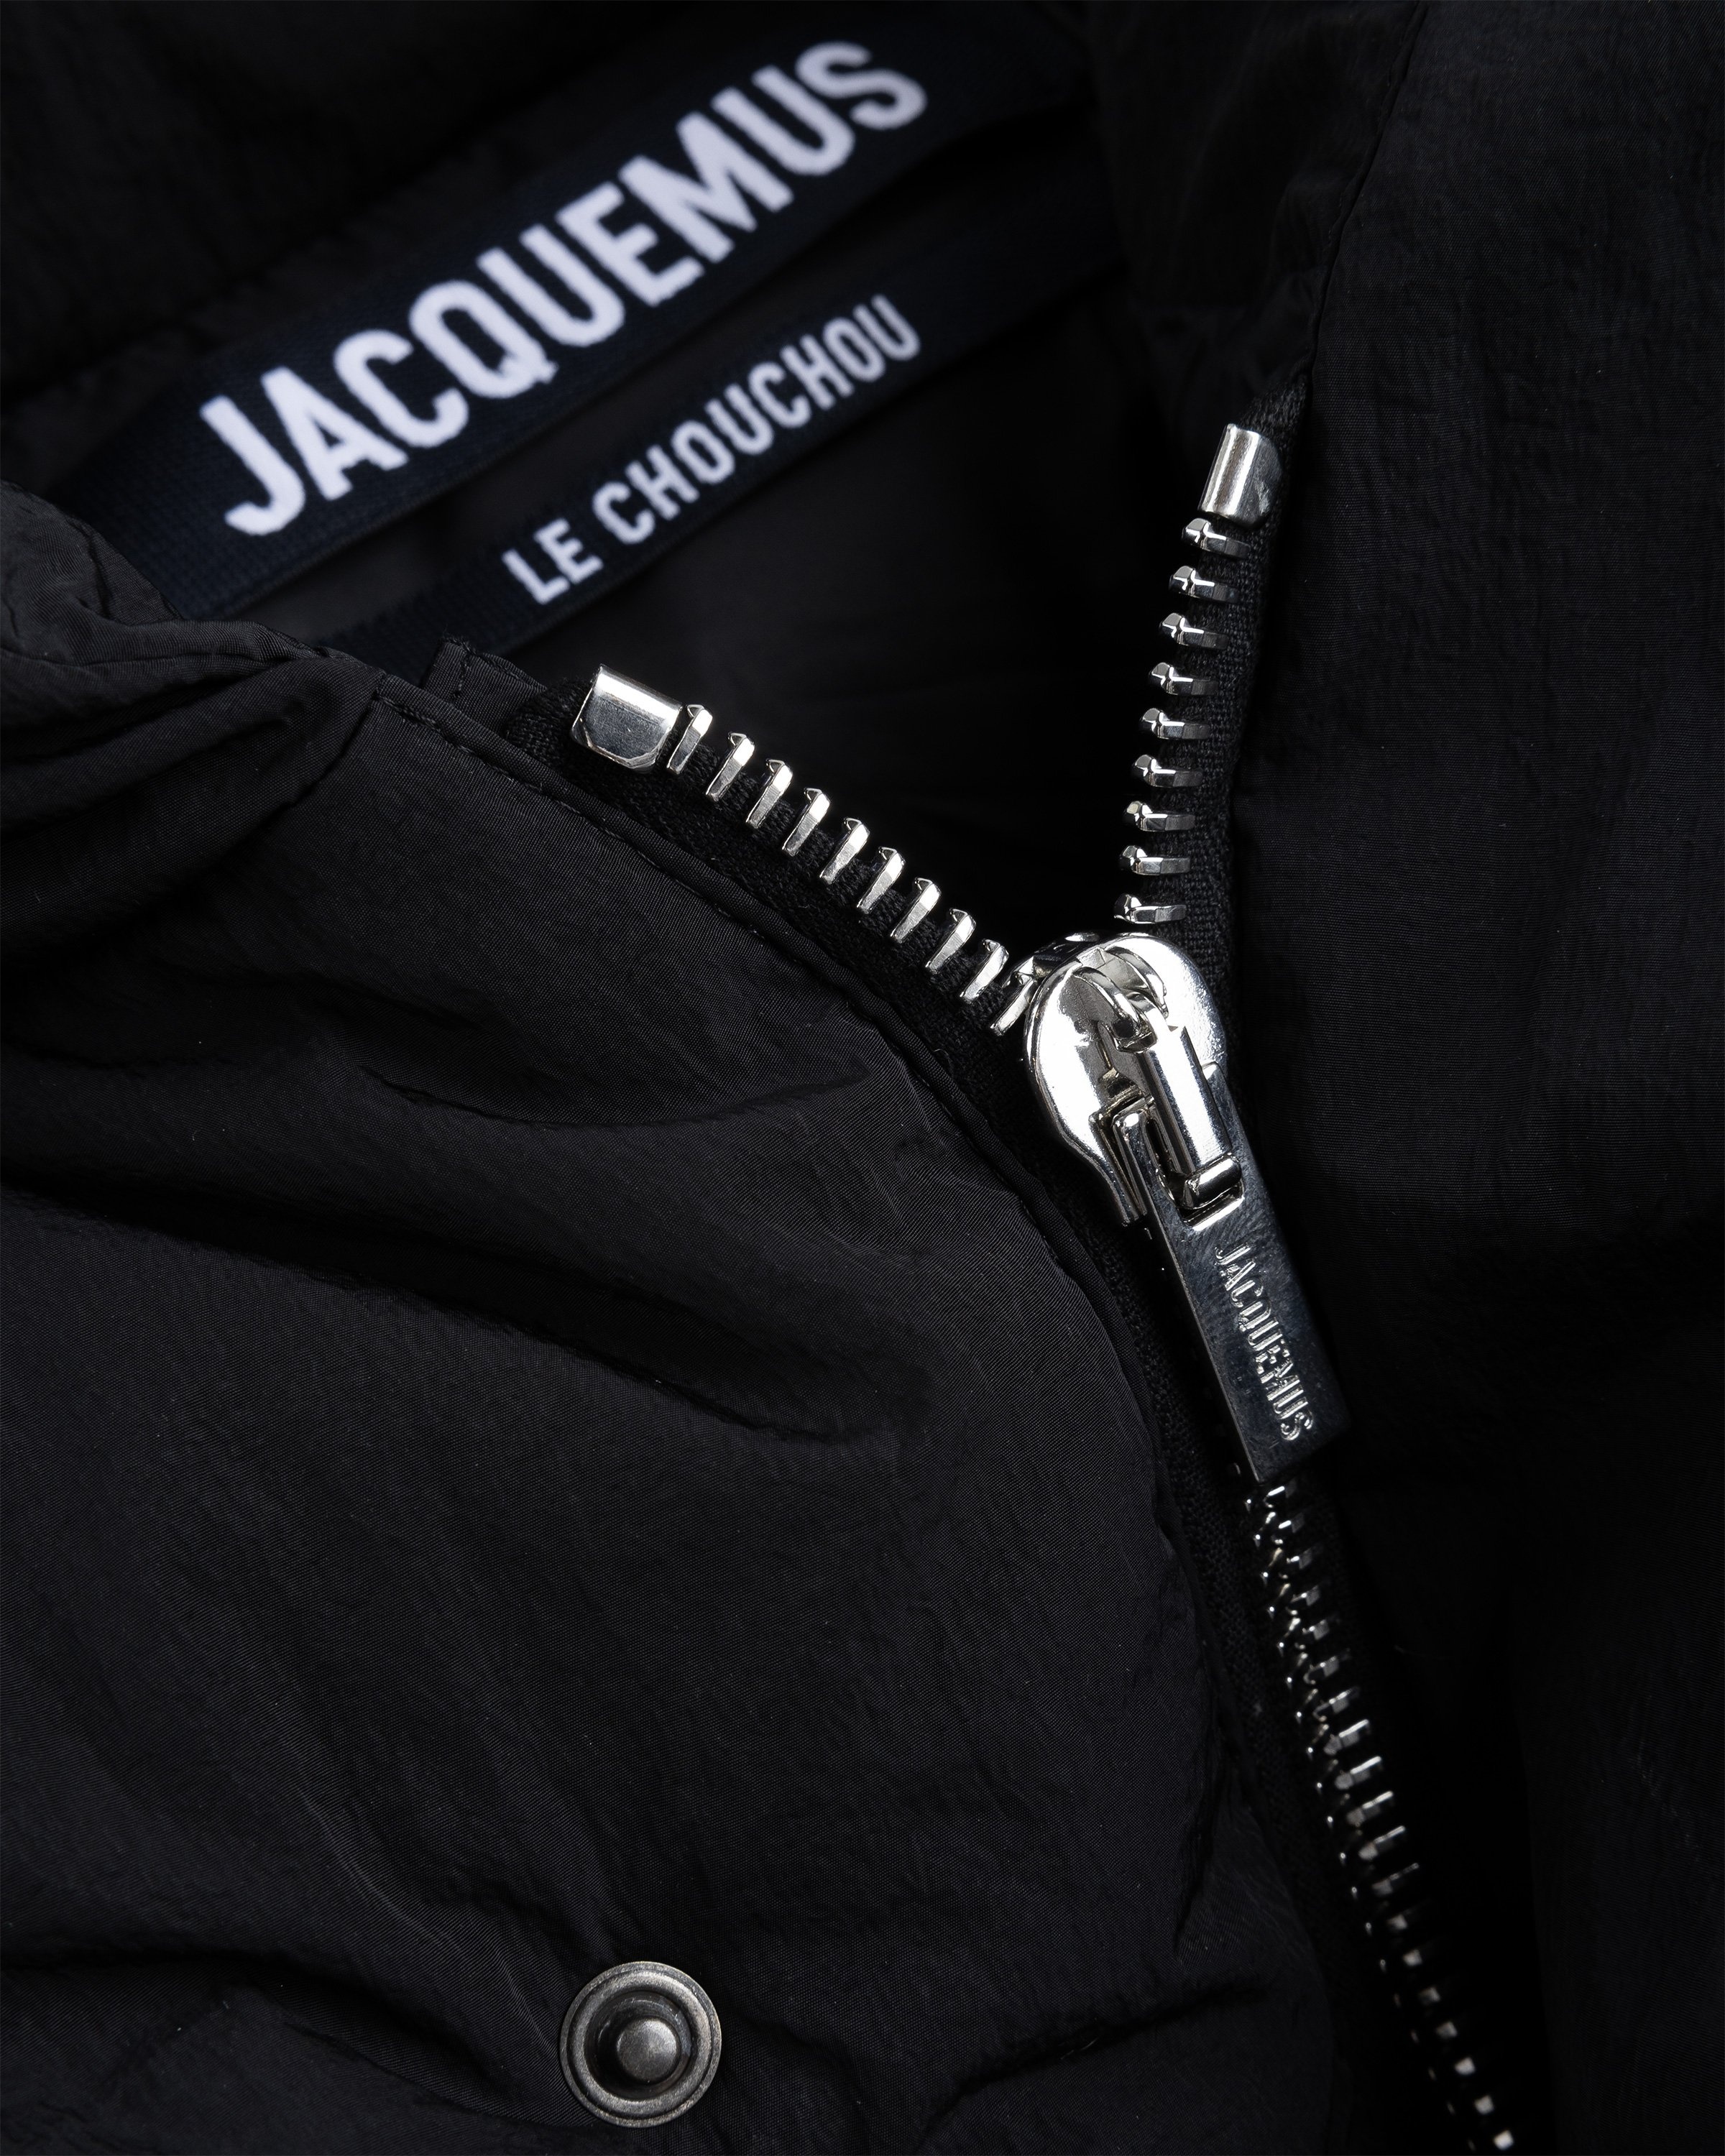 JACQUEMUS – La Doudoune Cocon Black - Outerwear - BLACK - Image 6